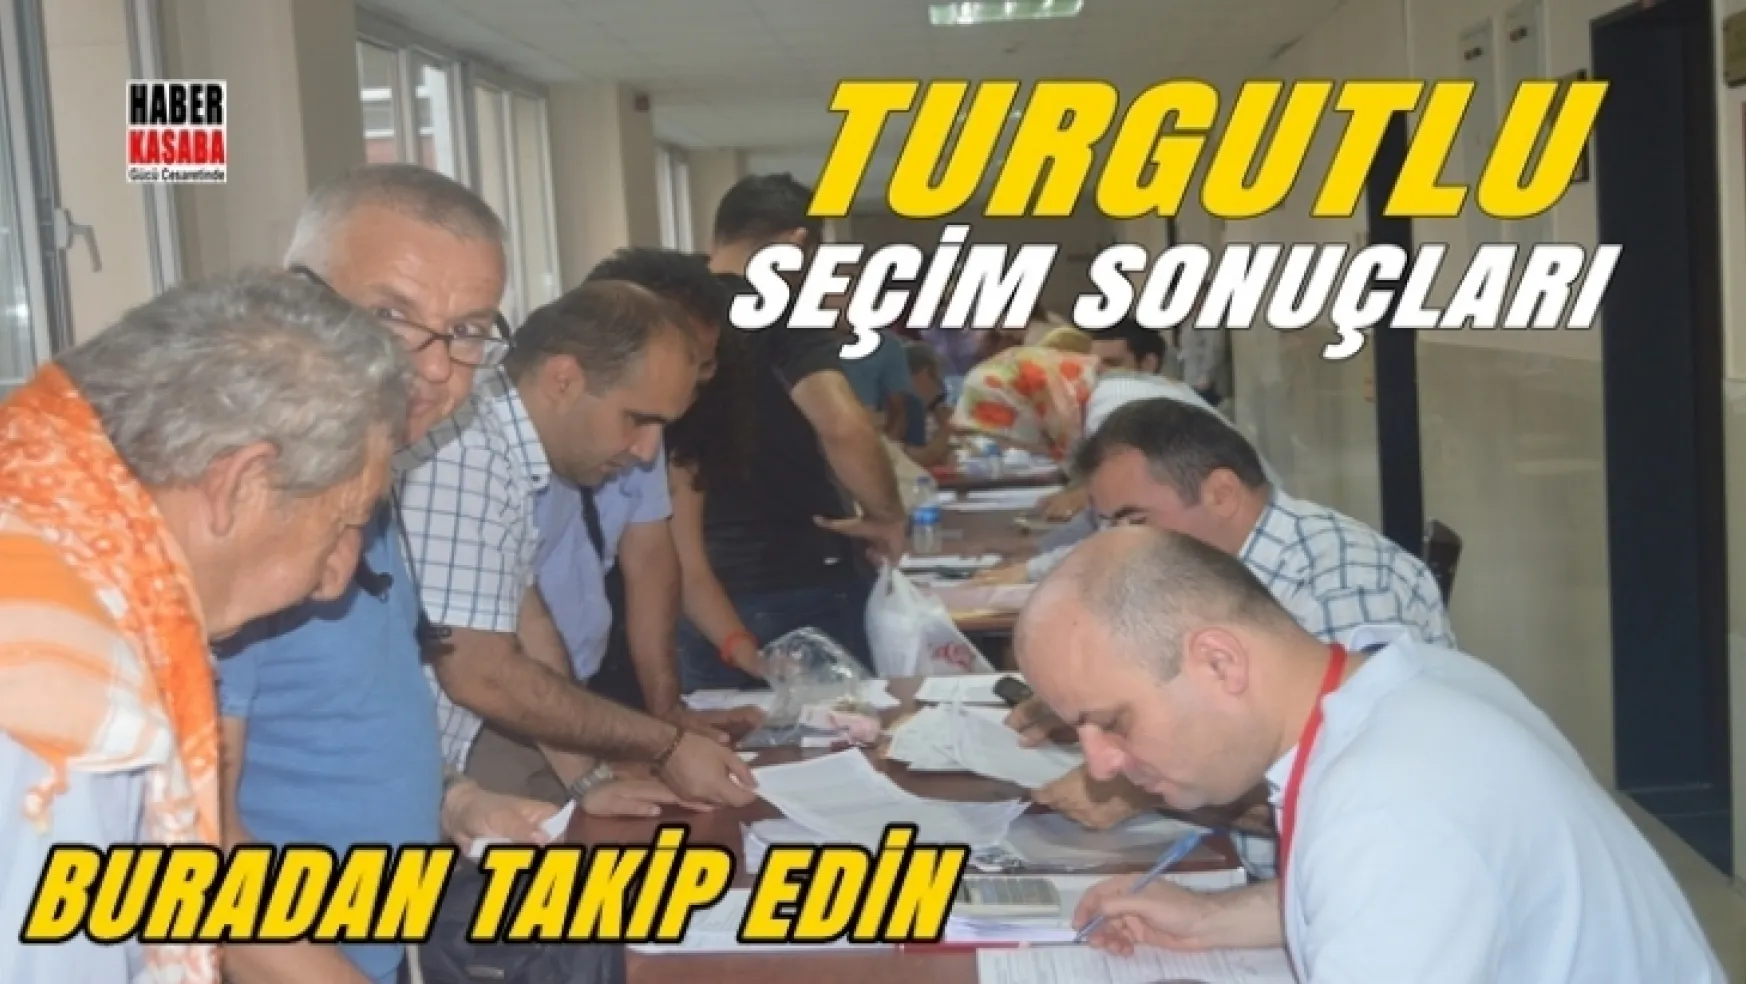 Turgutlu'daki seçim sonuçlarını buradan takip edin